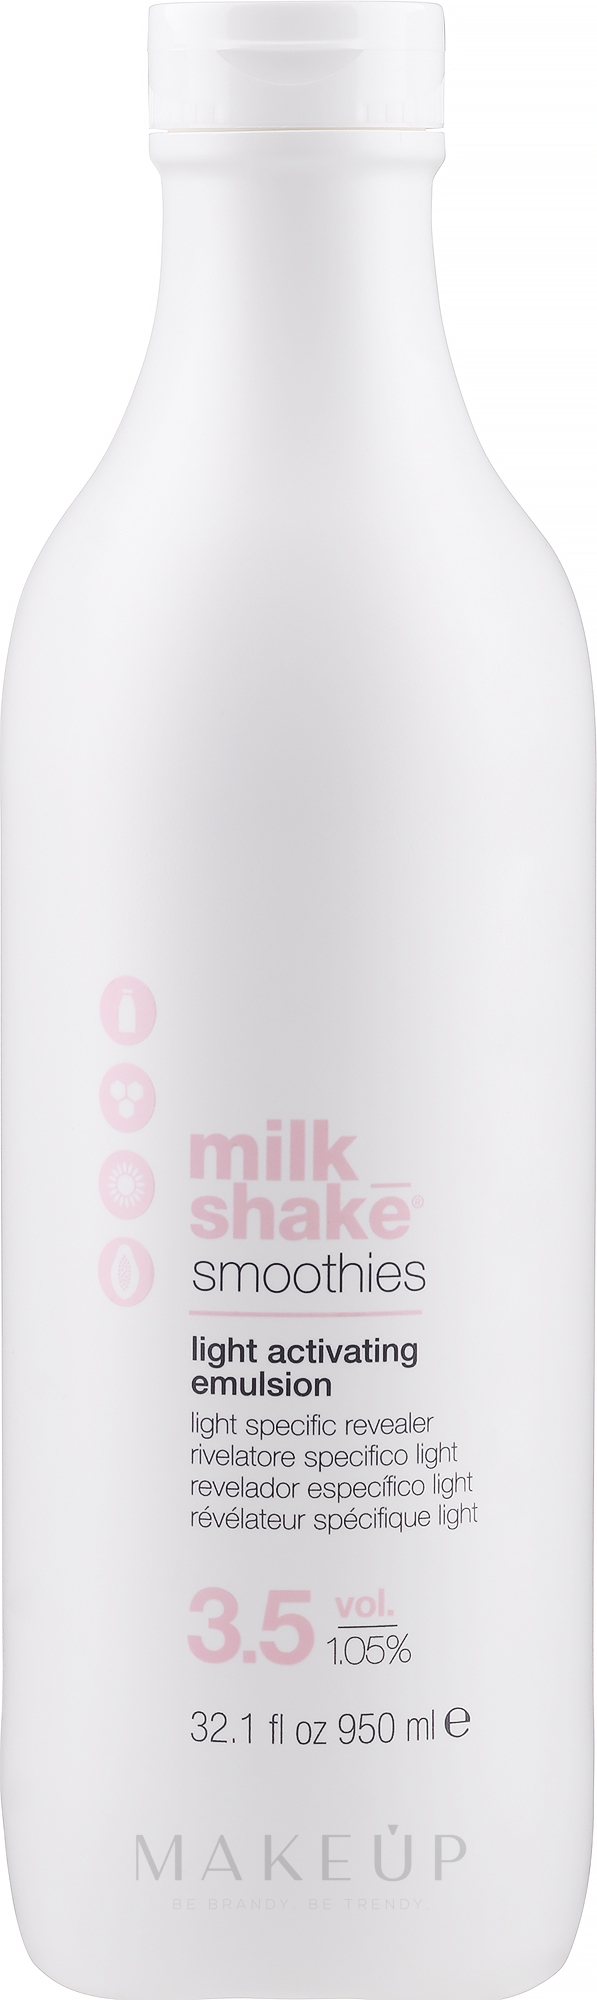 Emulsions-Aktivator für das Haar - Milk_Shake Smoothies Light Activating Emulsion — Bild 1000 ml